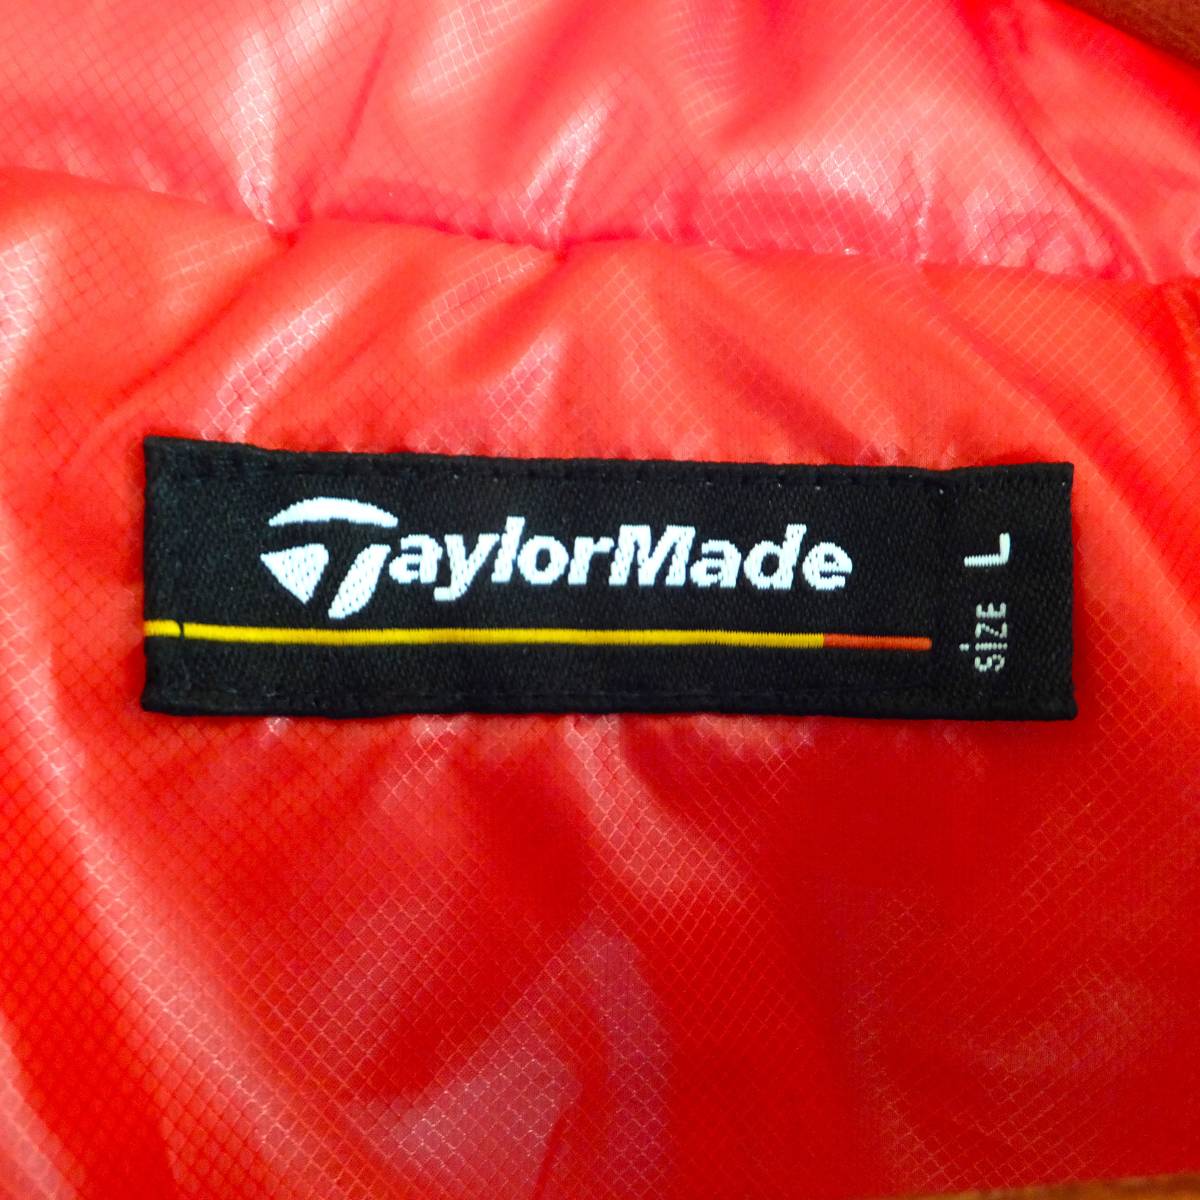  новый товар TaylorMade TaylorMade свет пуховик L размер не использовался down 80% перо 20%. способ обычная цена Y26.000